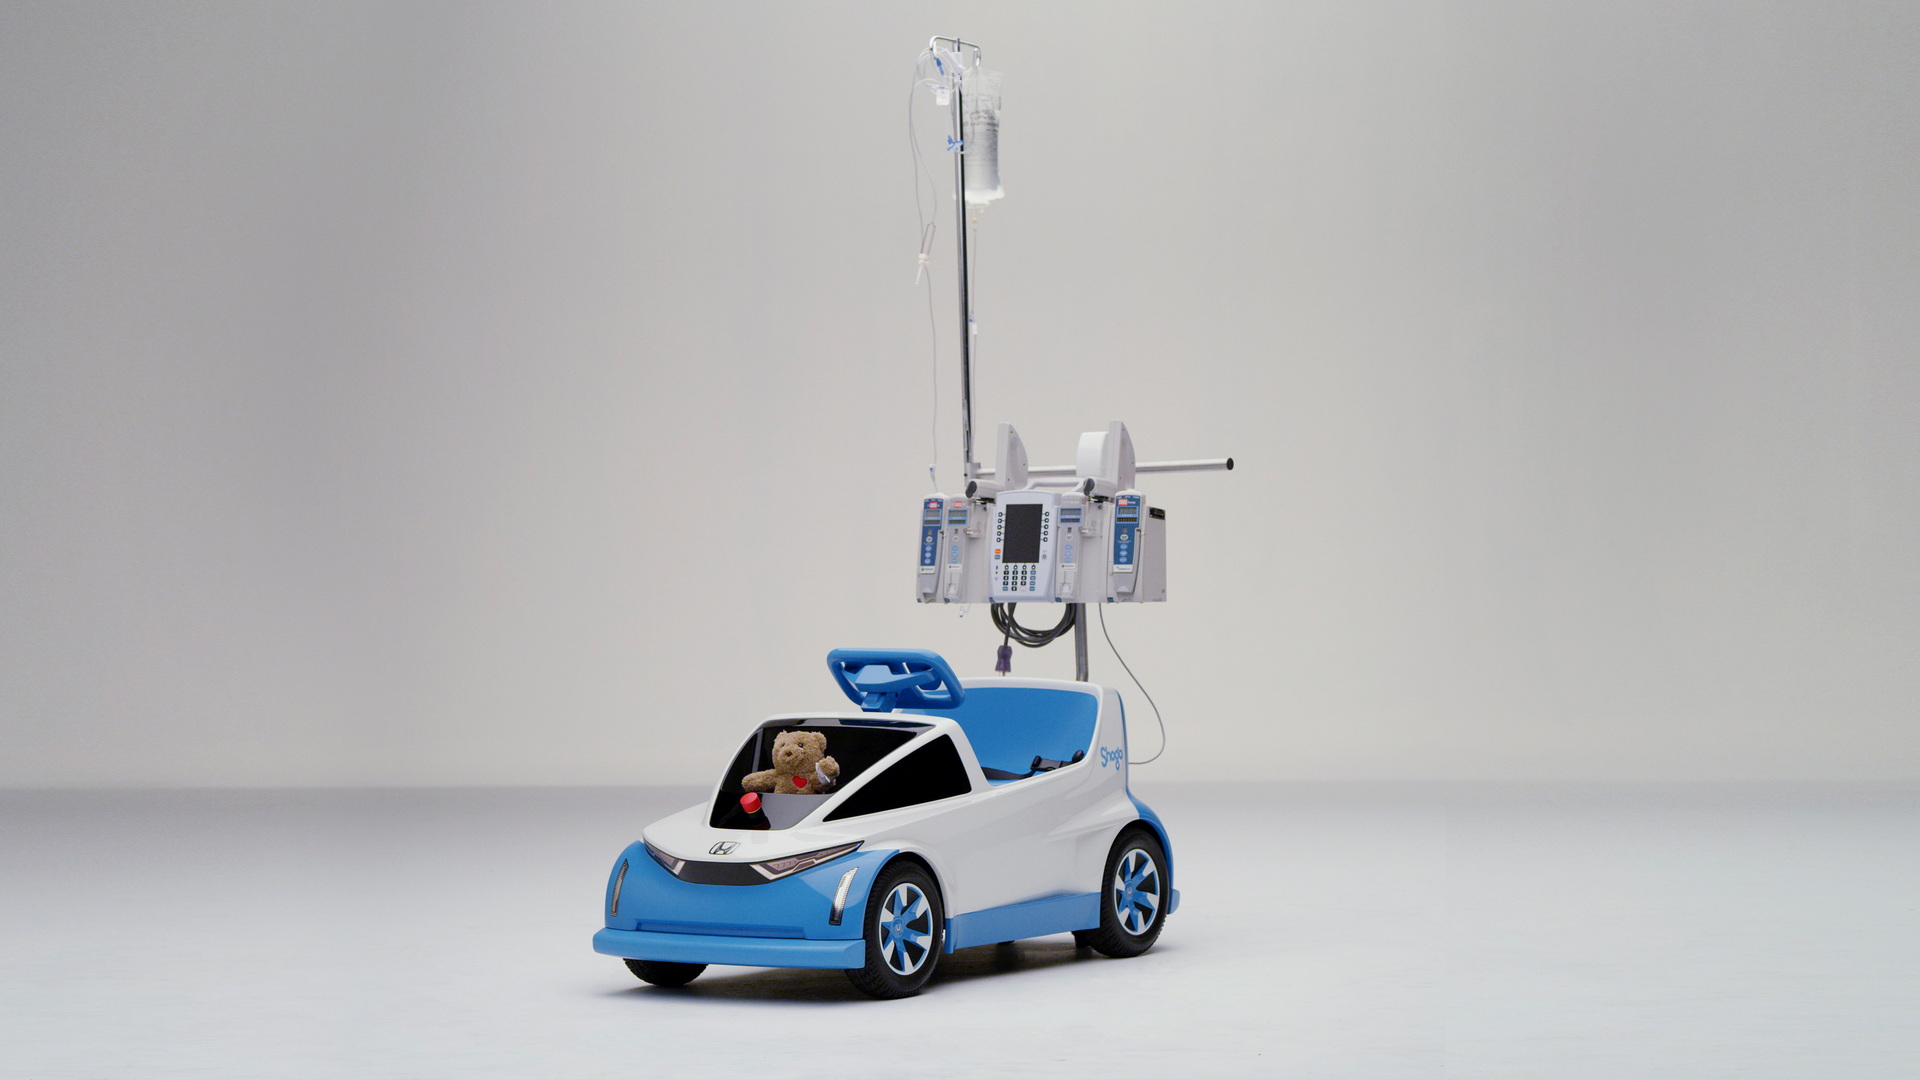 Honda diseña pequeño auto eléctrico para niños en hospitales